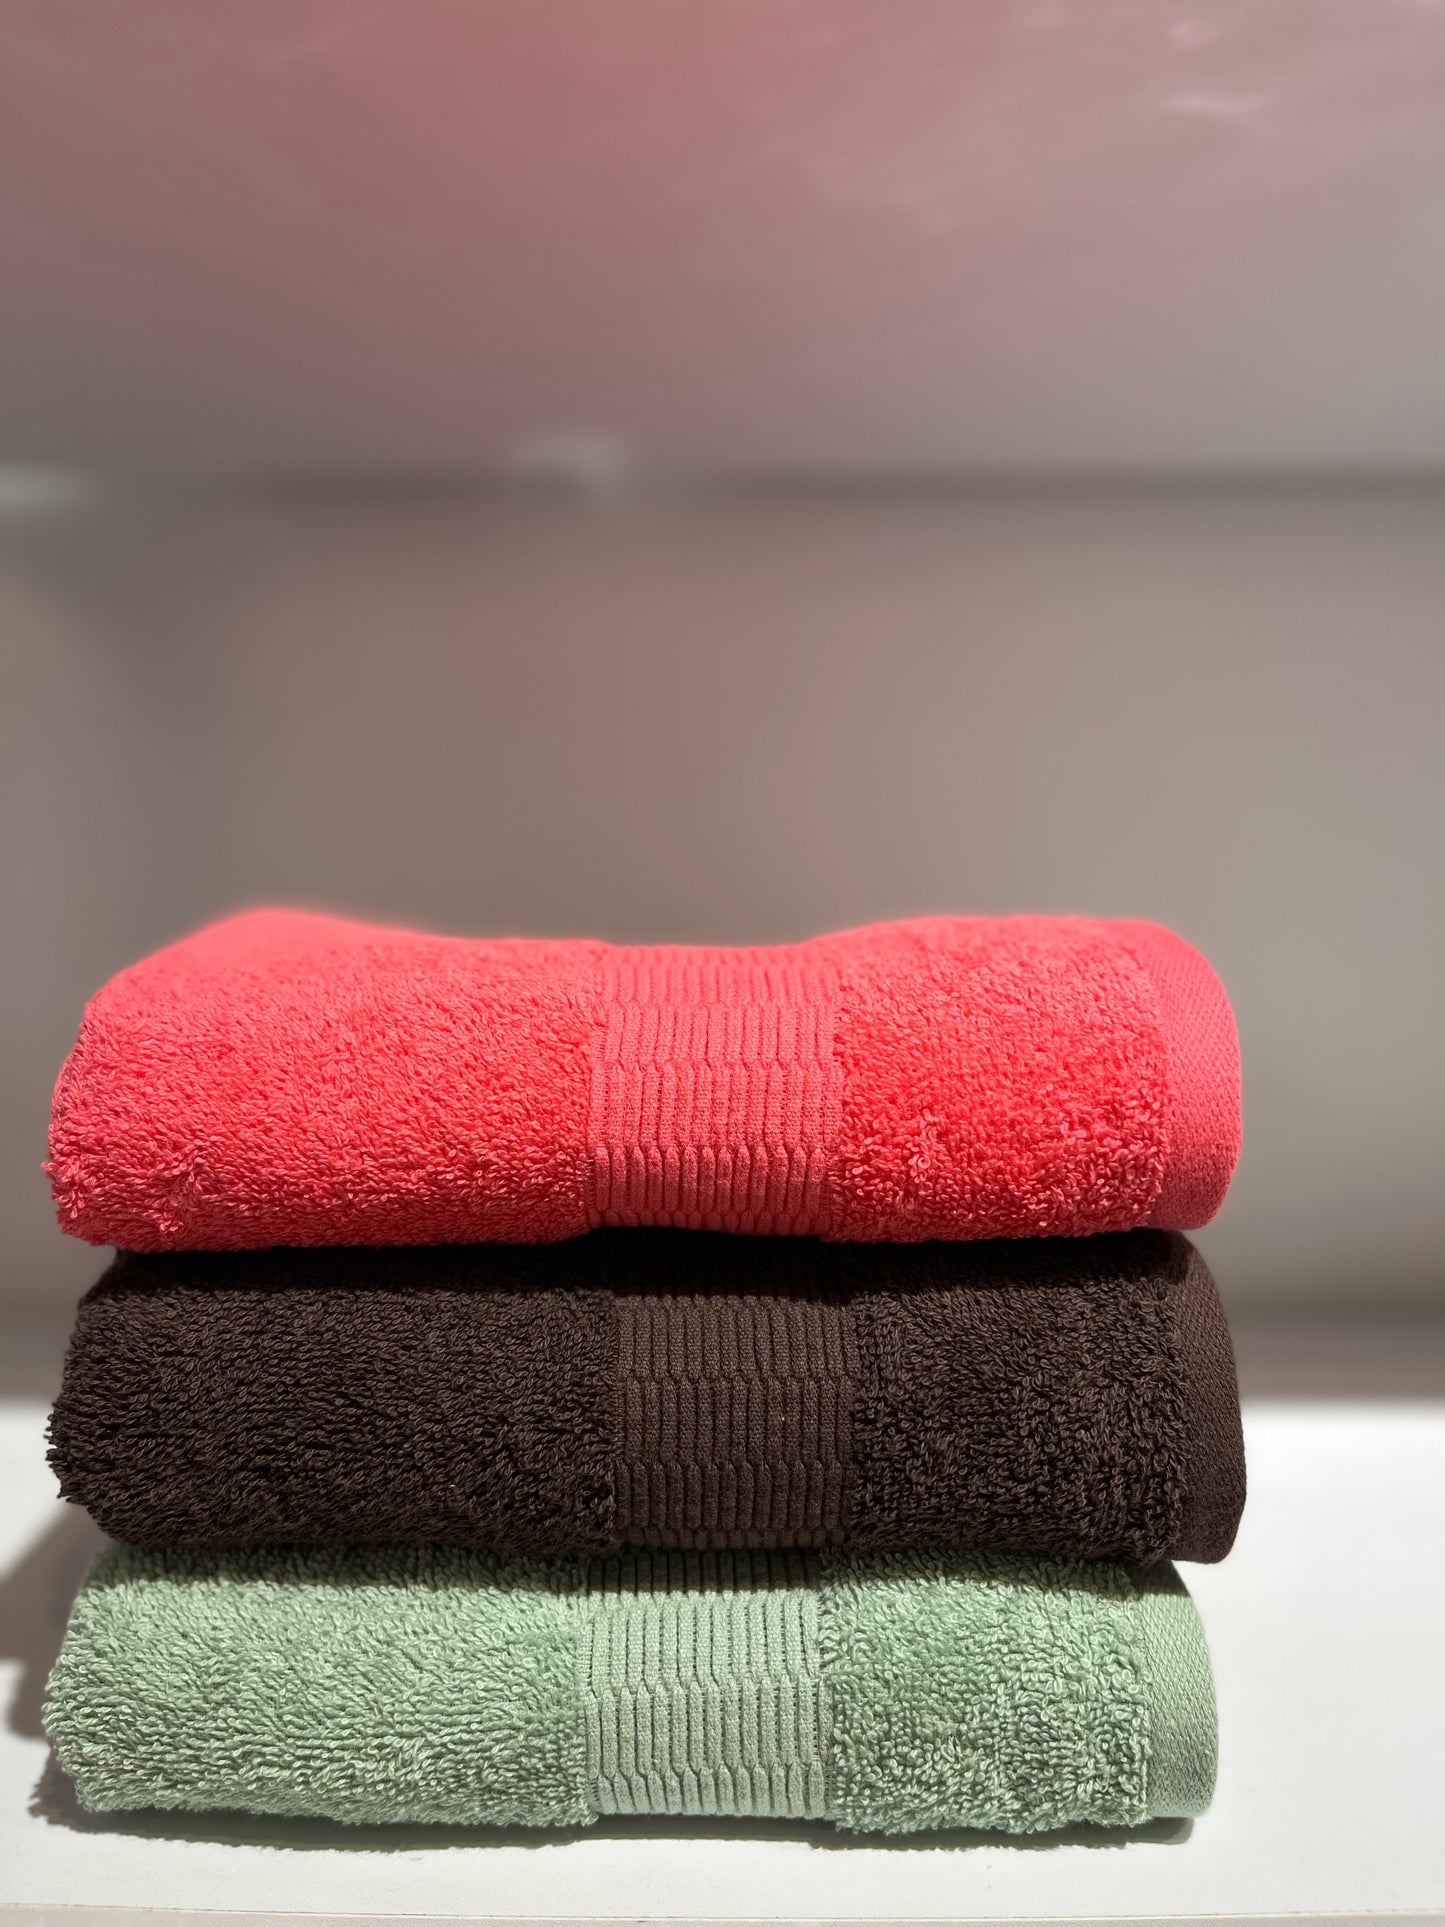 Basic towels